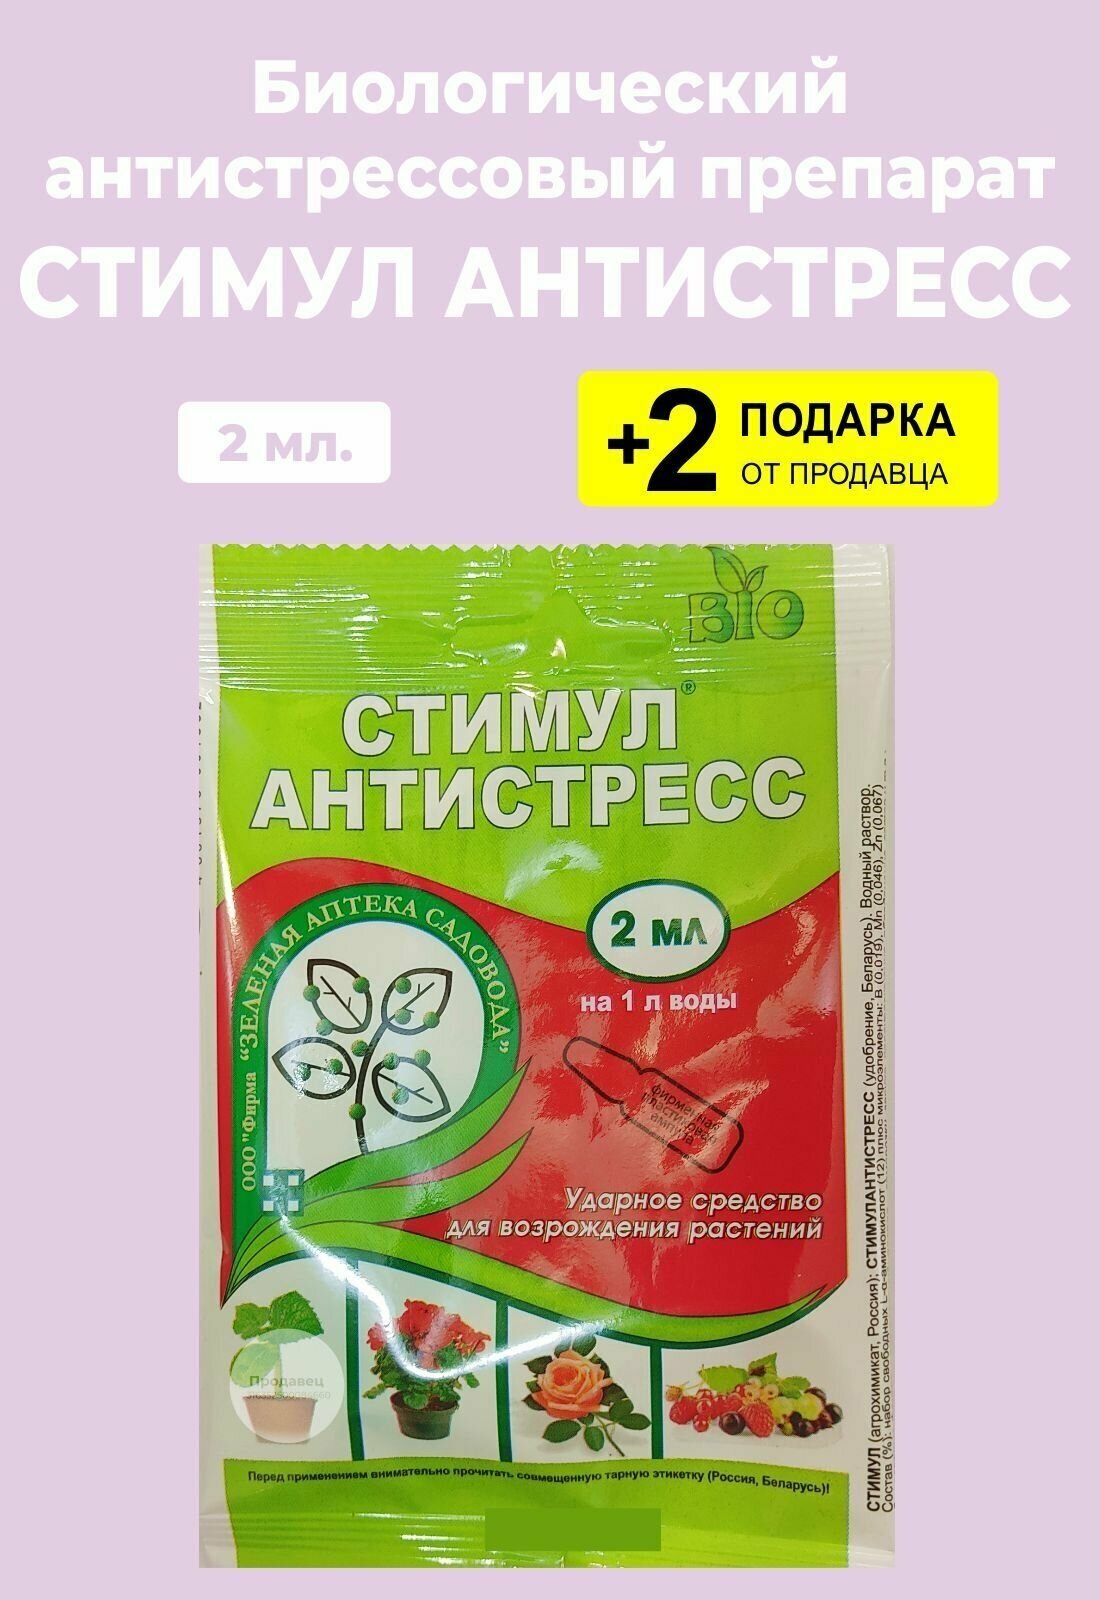 Препарат для восстановления растений "Стимул Антистресс", 2 мл. + 2 Подарка